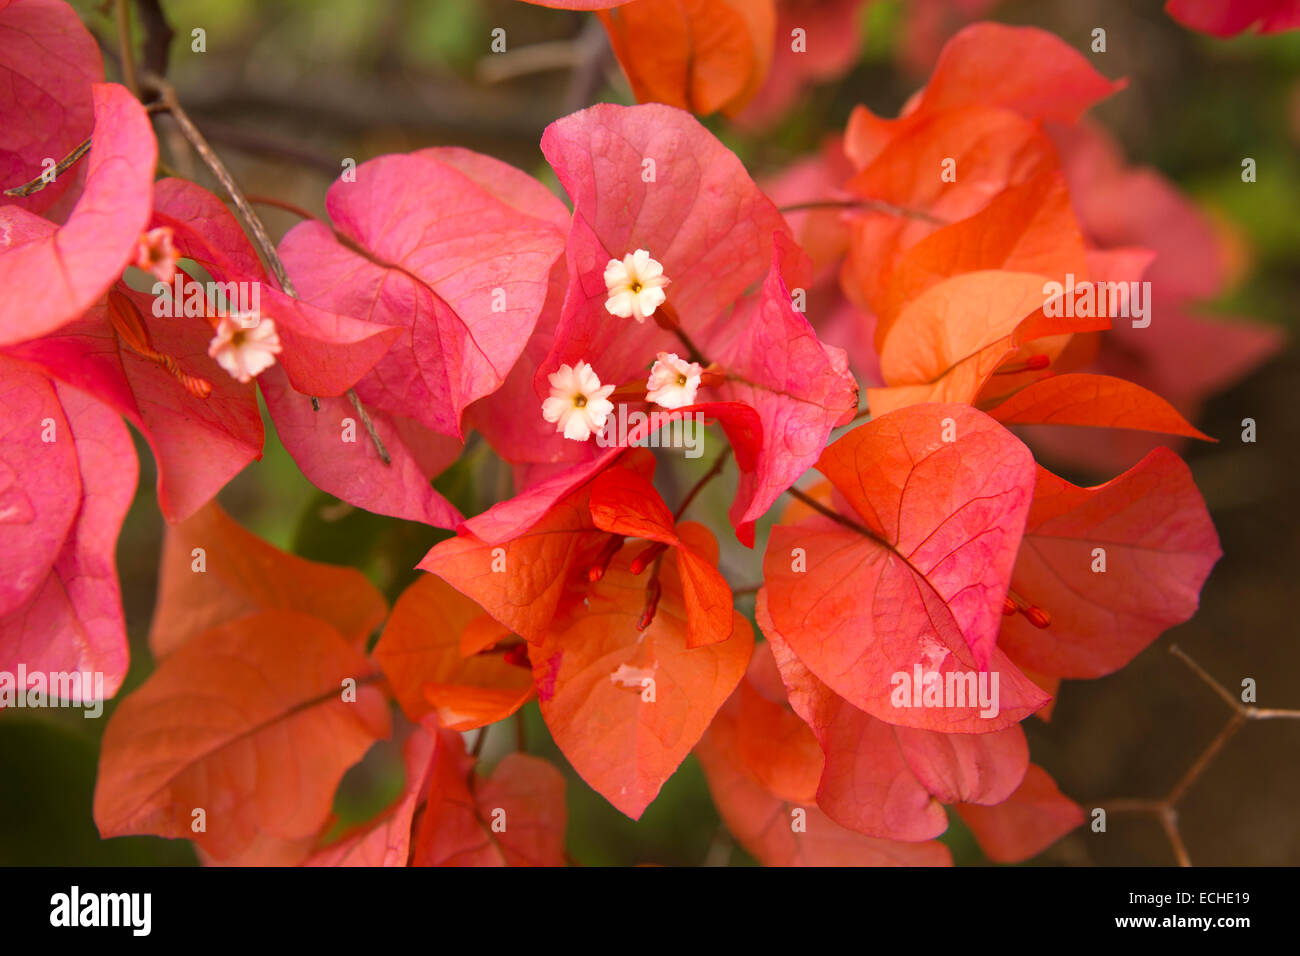 Mauritius, Mahebourg, tropischer Flora, rote Bougainvillea Blüten mit weißen Hochblättern Stockfoto